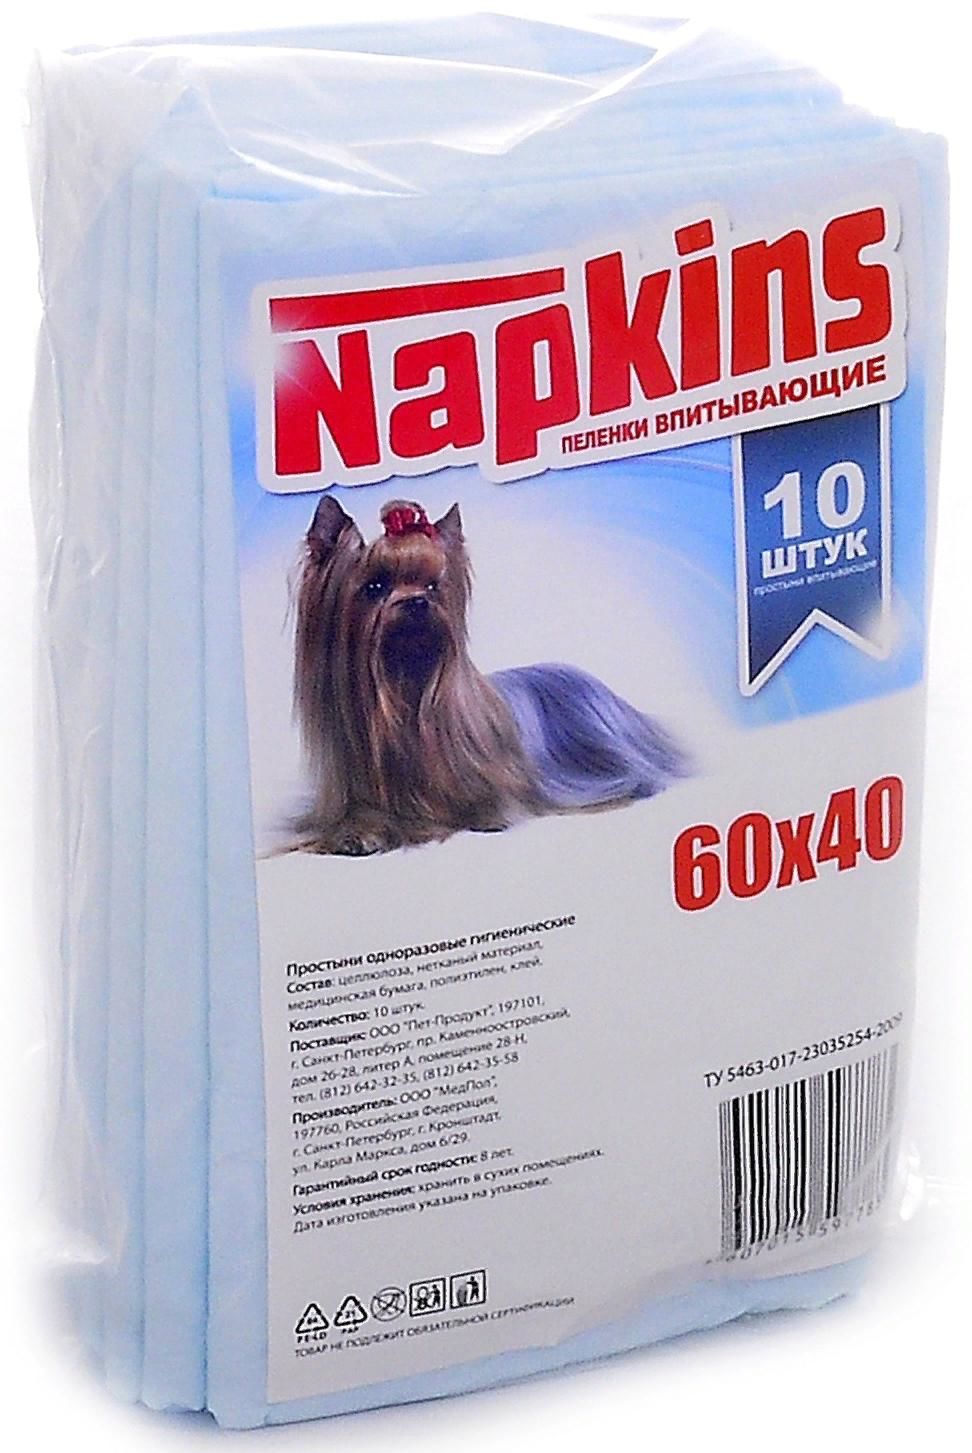 Napkins пеленки для собак 60x40 см. 10 шт.